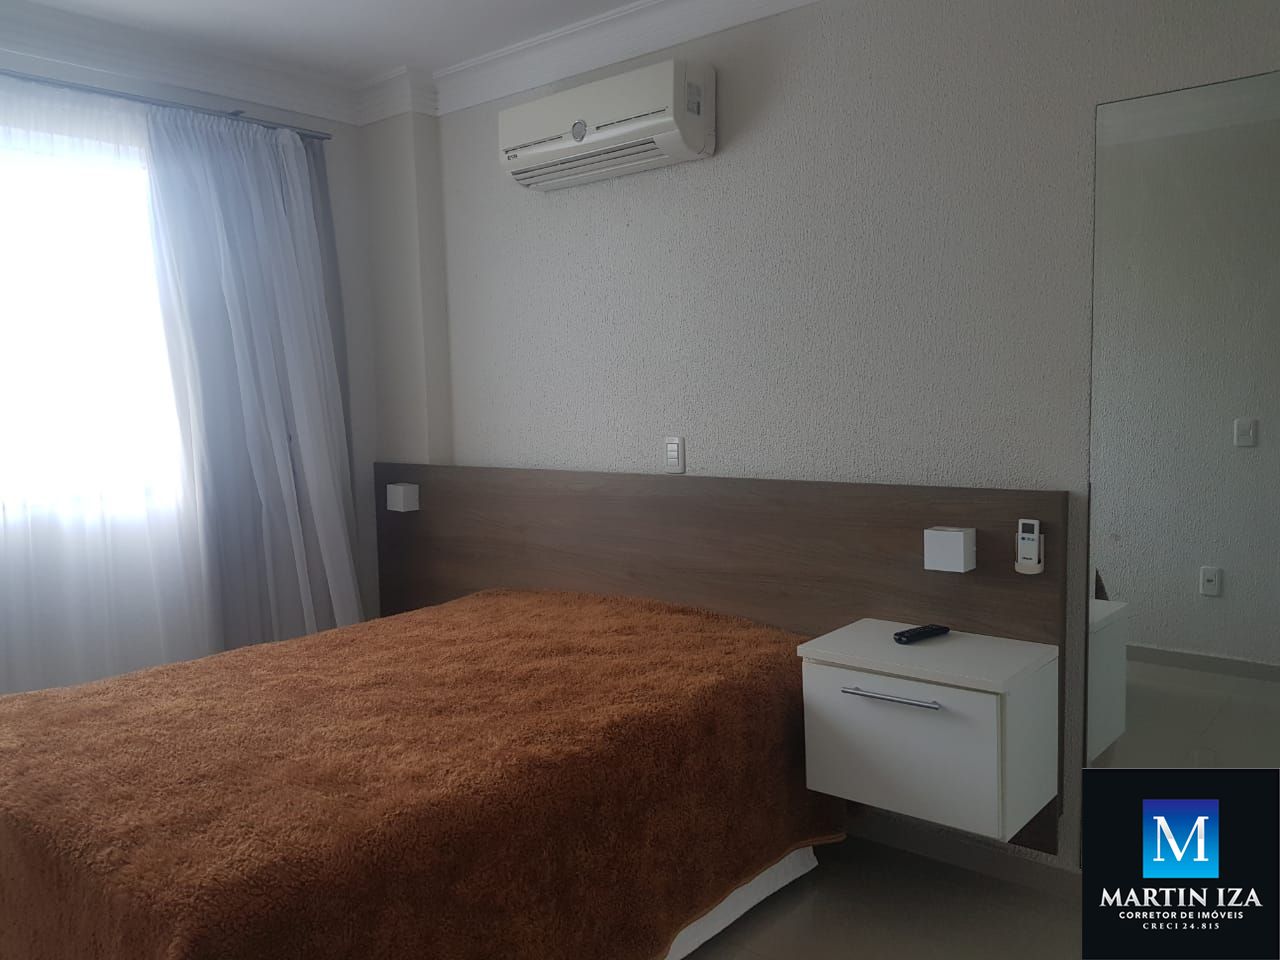 Apartamento com 1 Dormitórios para alugar, 45 m² por R$ 200,00